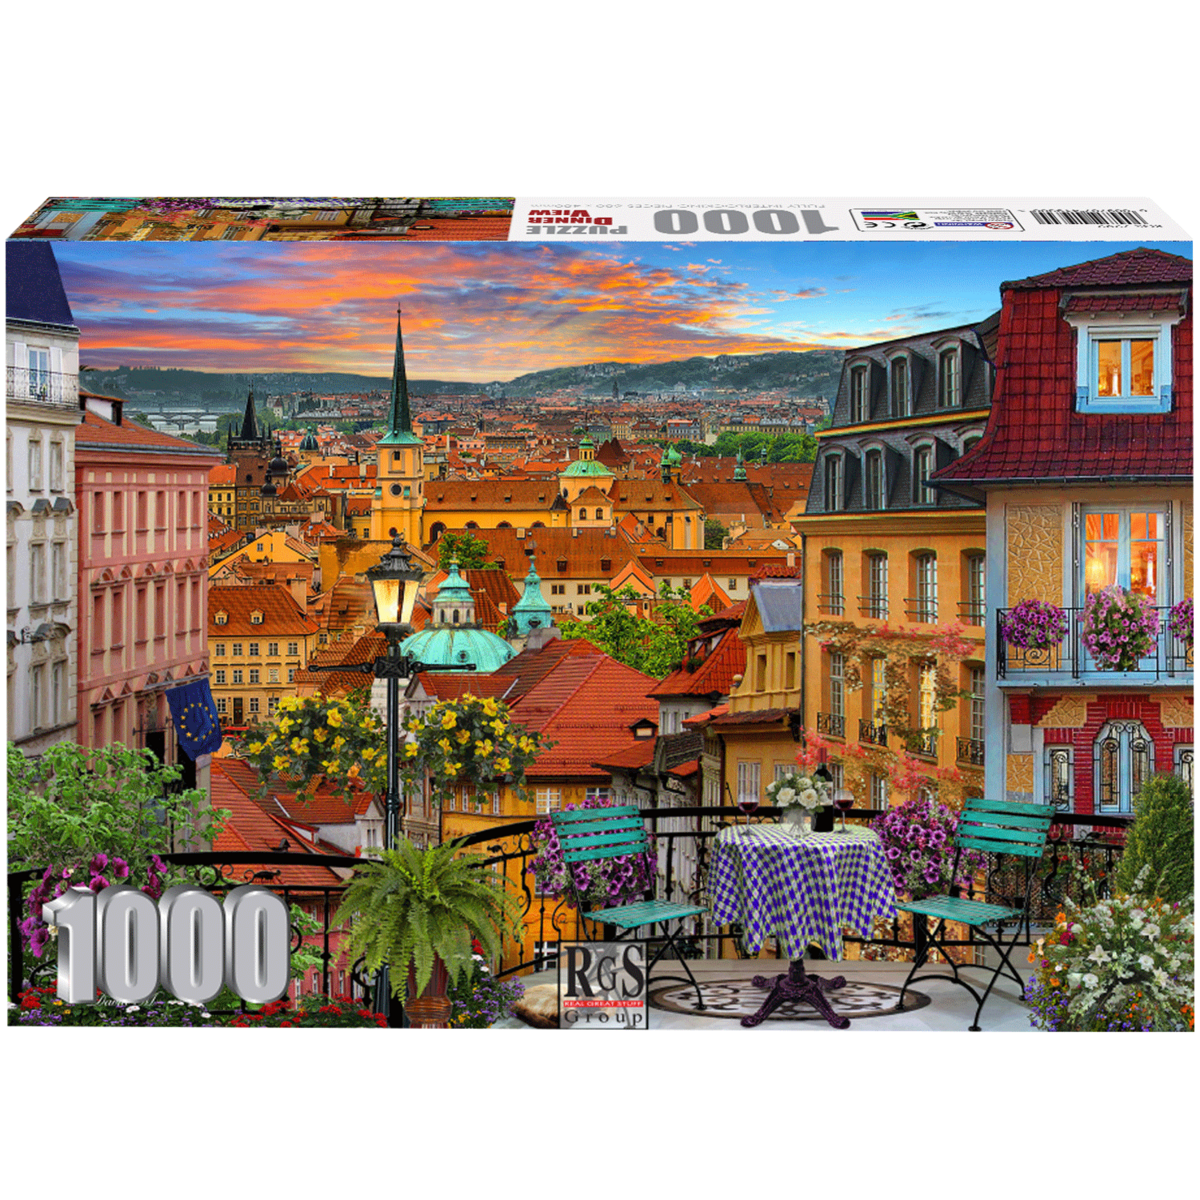 Ravensburger - Puzzle Adulte - Puzzle 1000 p - L…